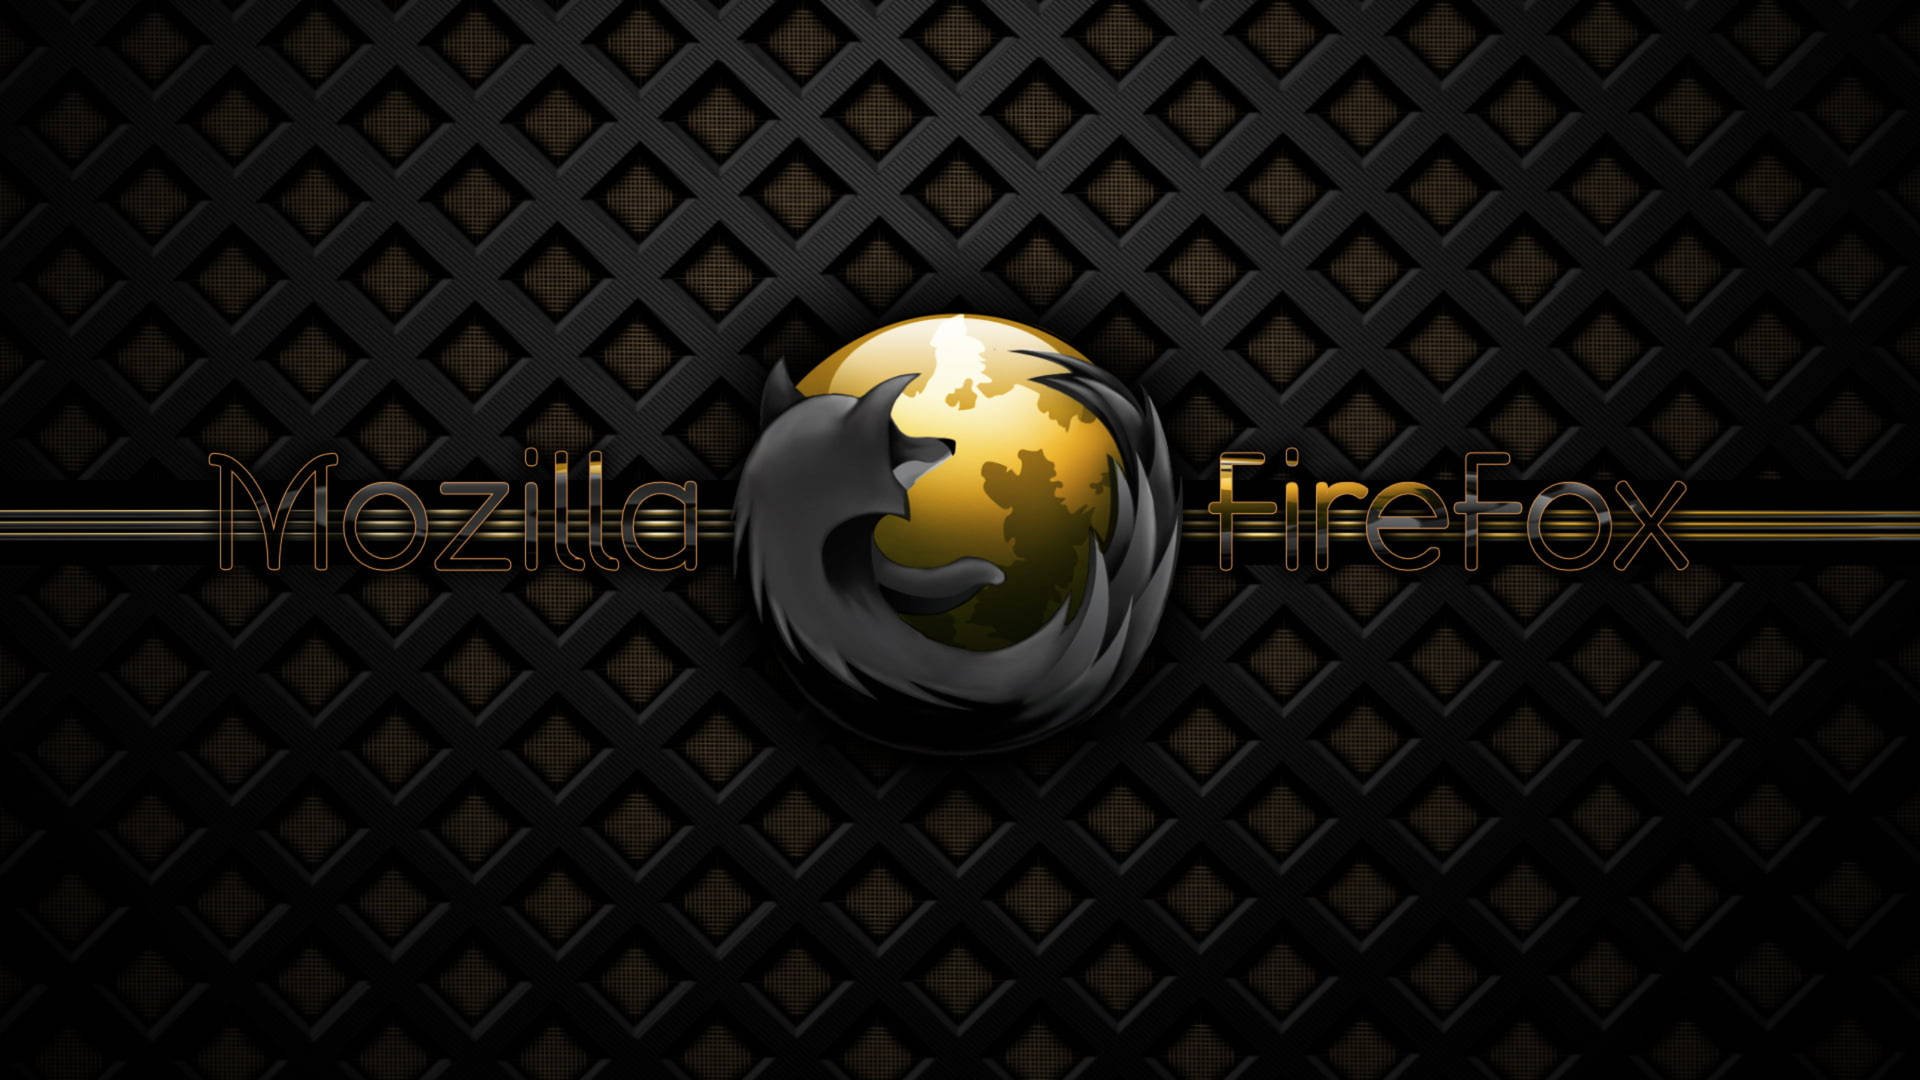 Mozillafirefox In Schwarz Und Gold Wallpaper